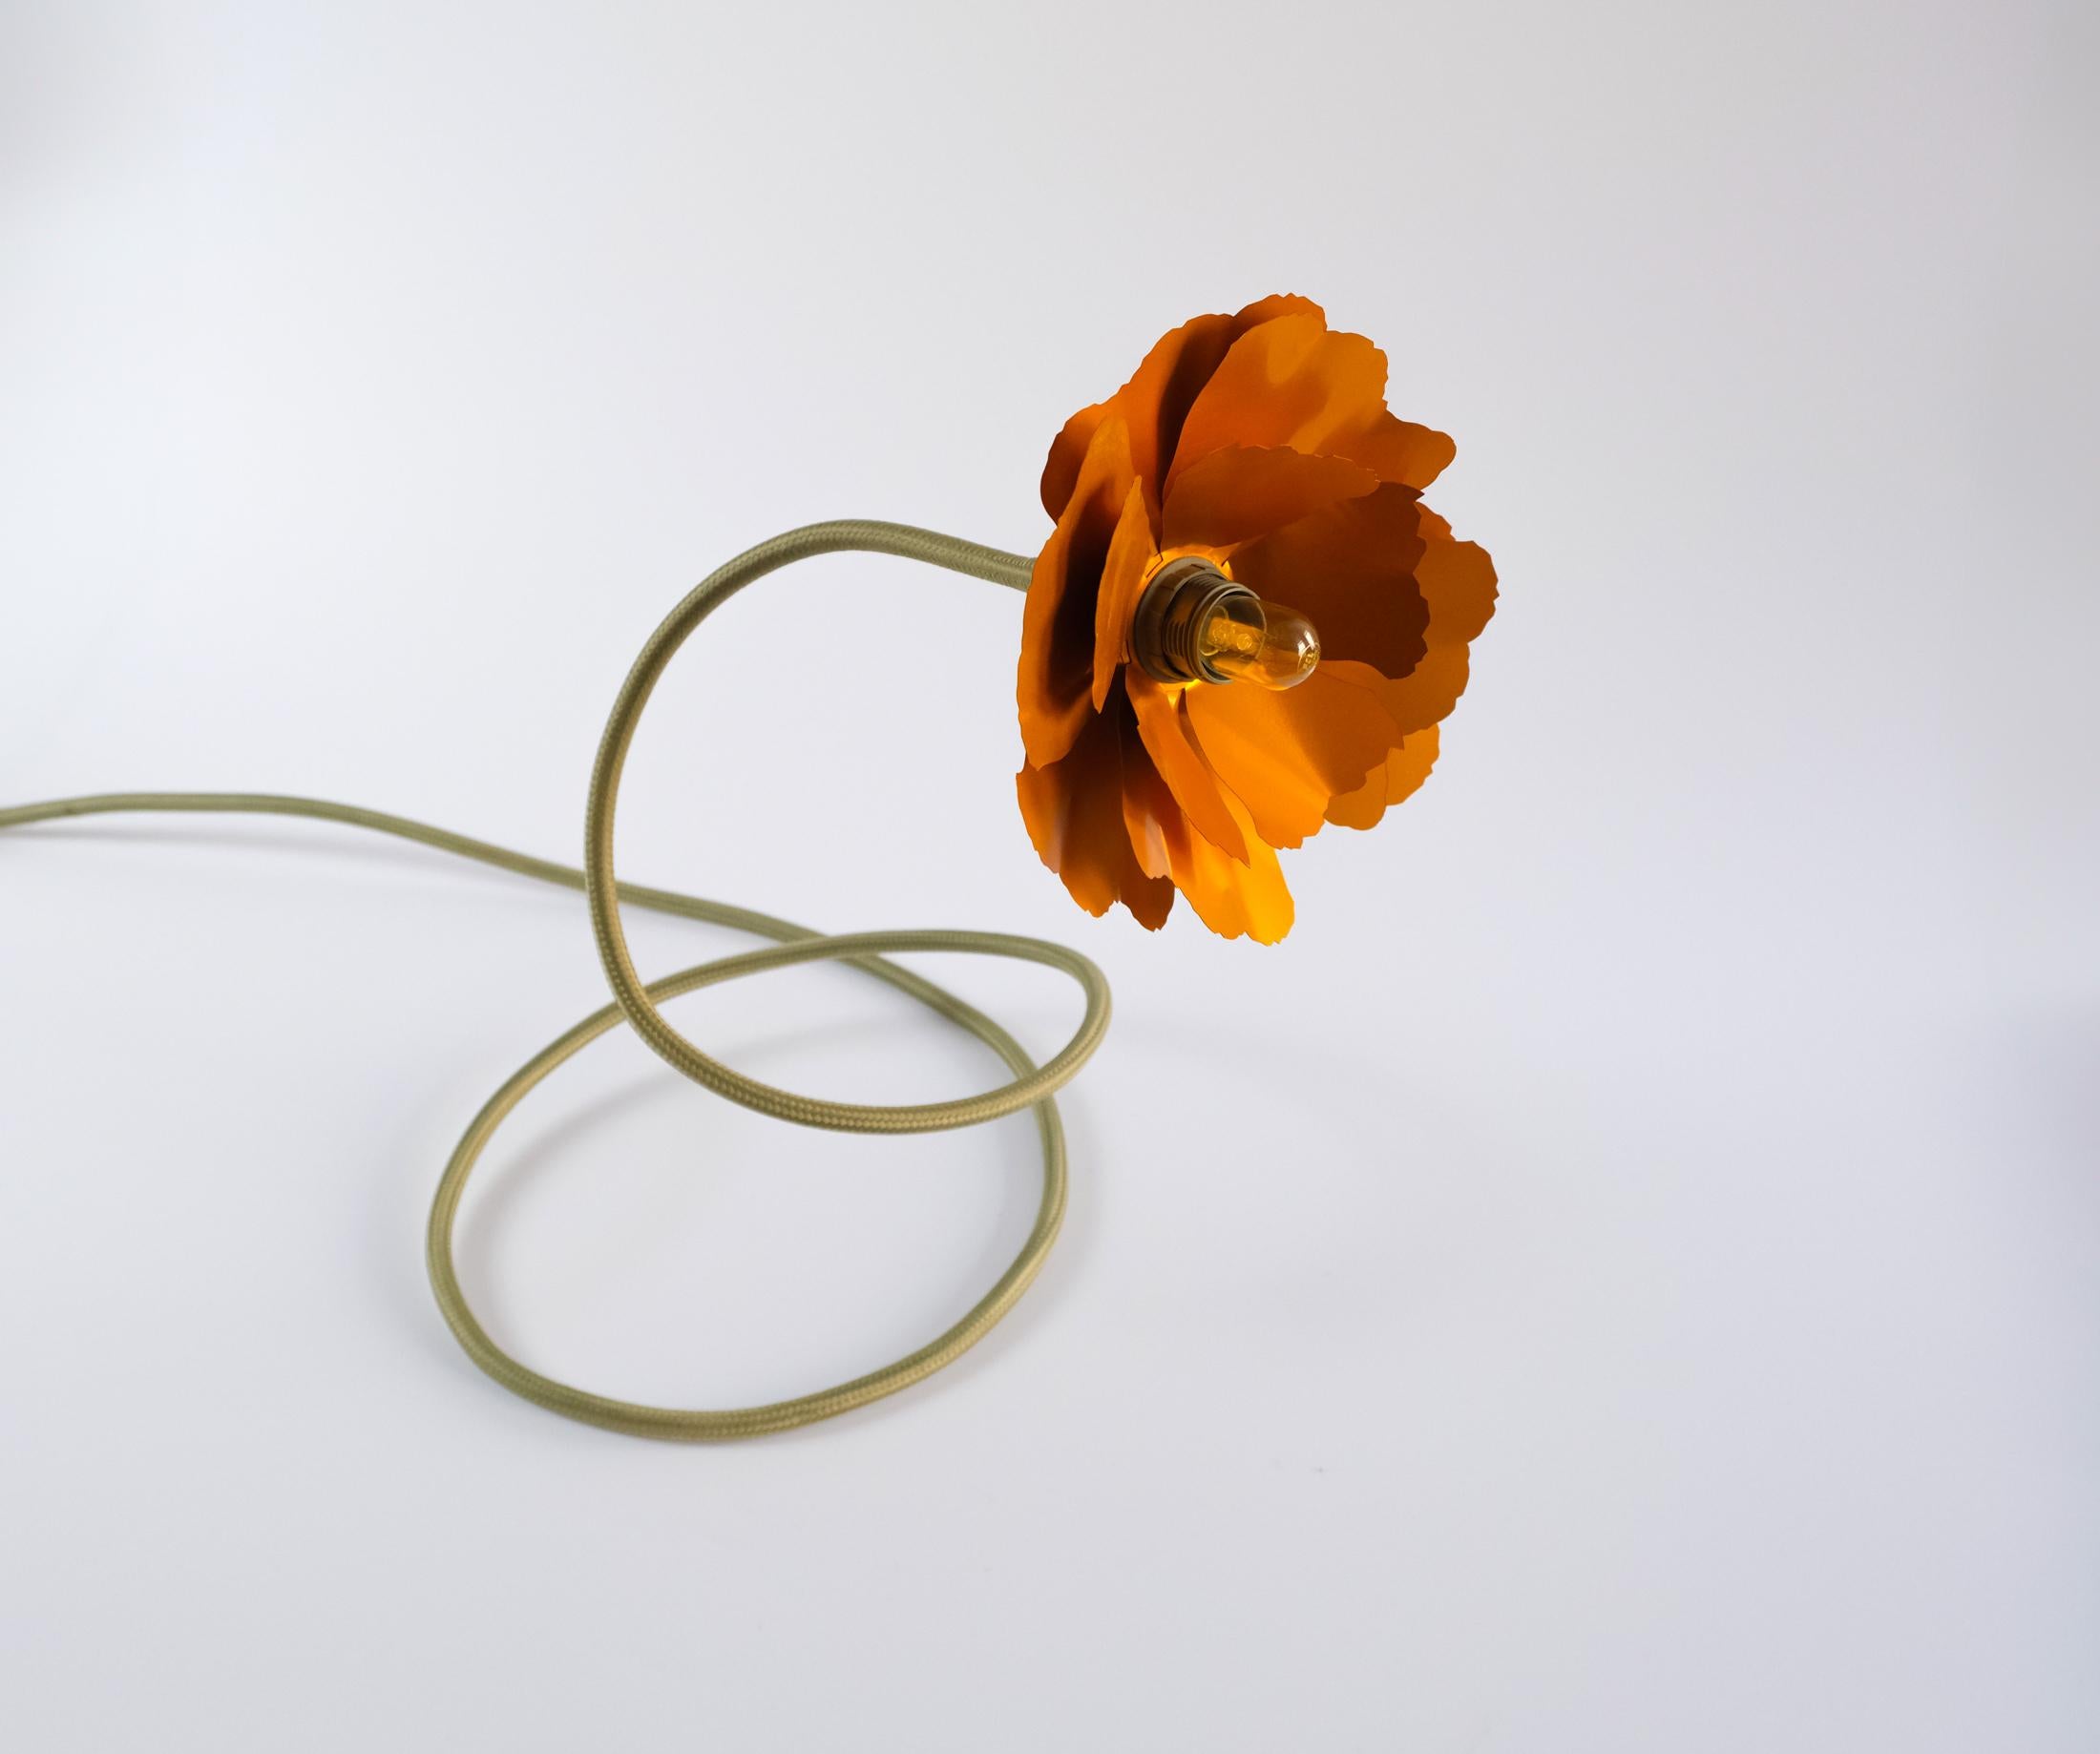 British Helena Christensen's Flexible Flower Lamp for Habitat “V.I.P” Collection, 2004 For Sale